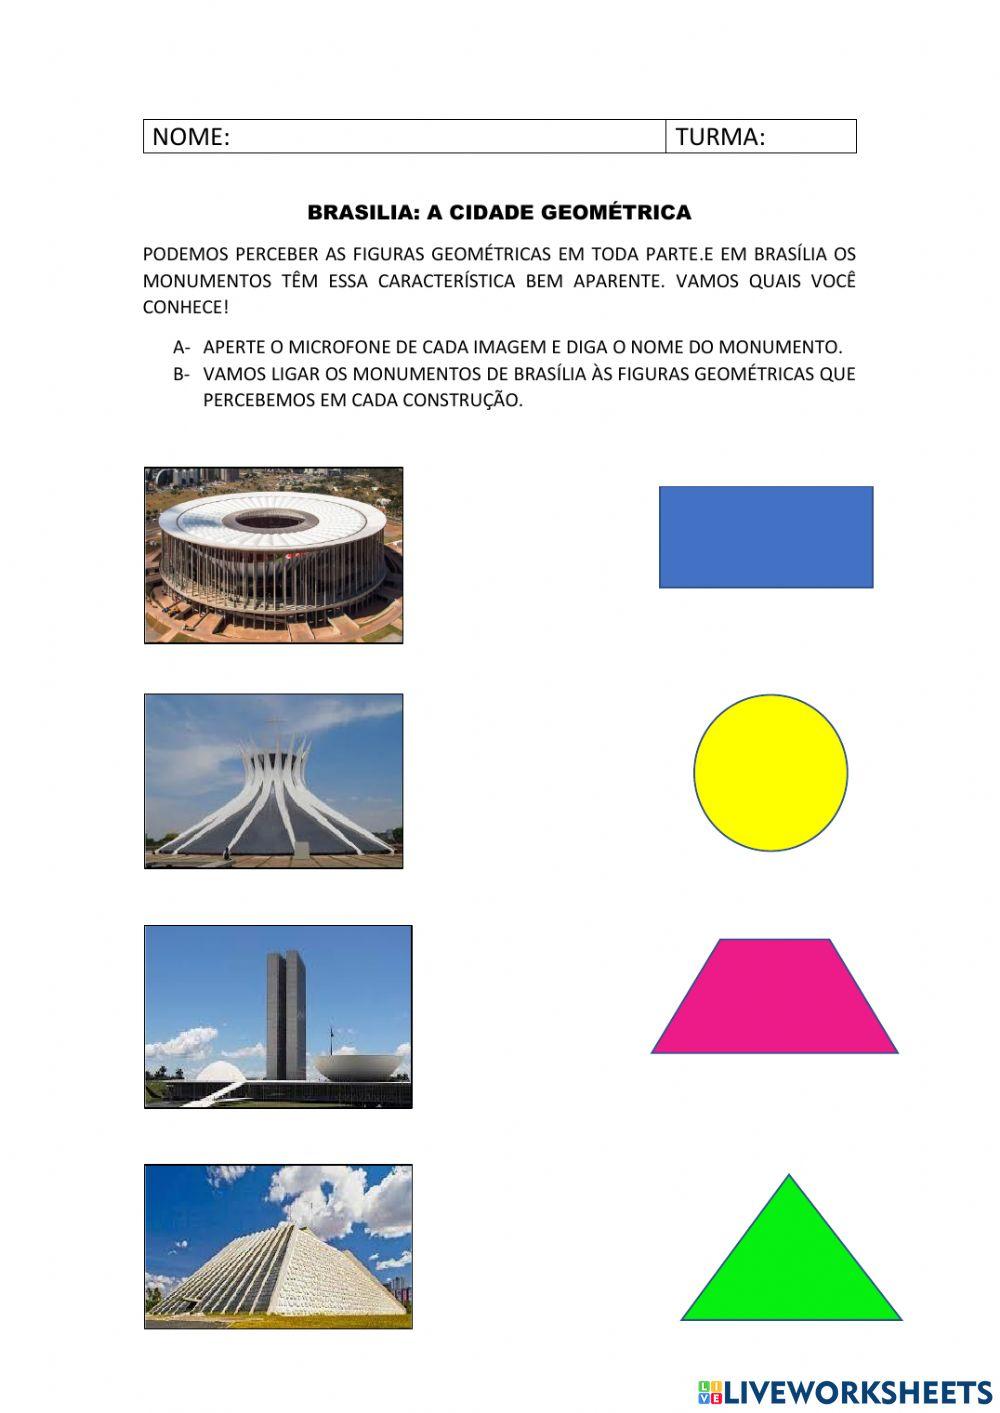 Brasília e geometria